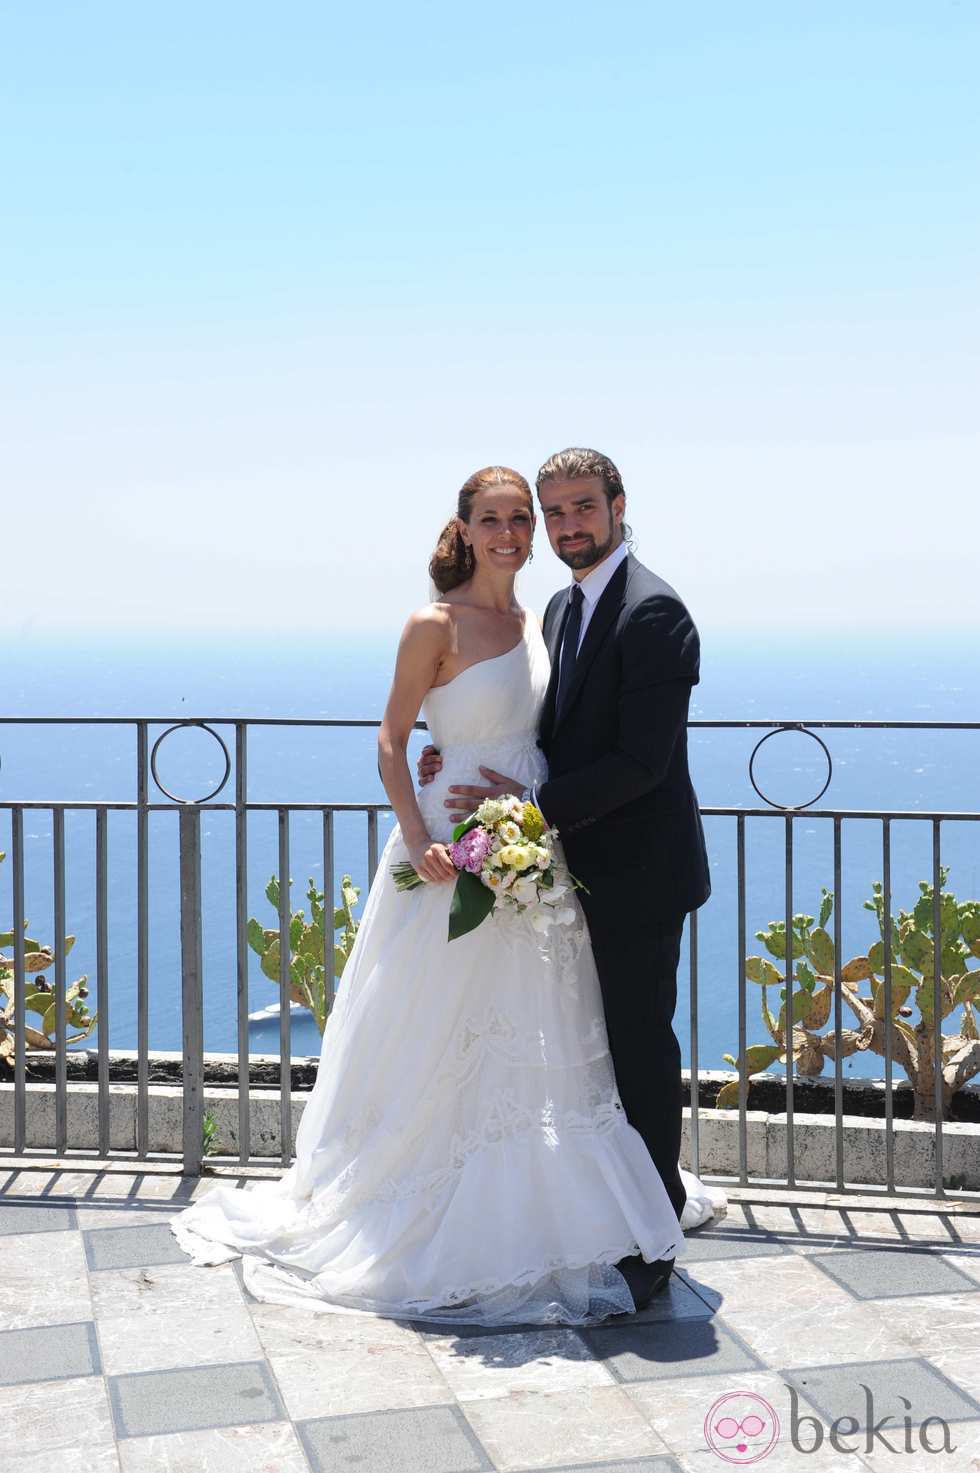 La foto de la boda de Raquel Sánchez Silva y Mario Biondo en Sicilia